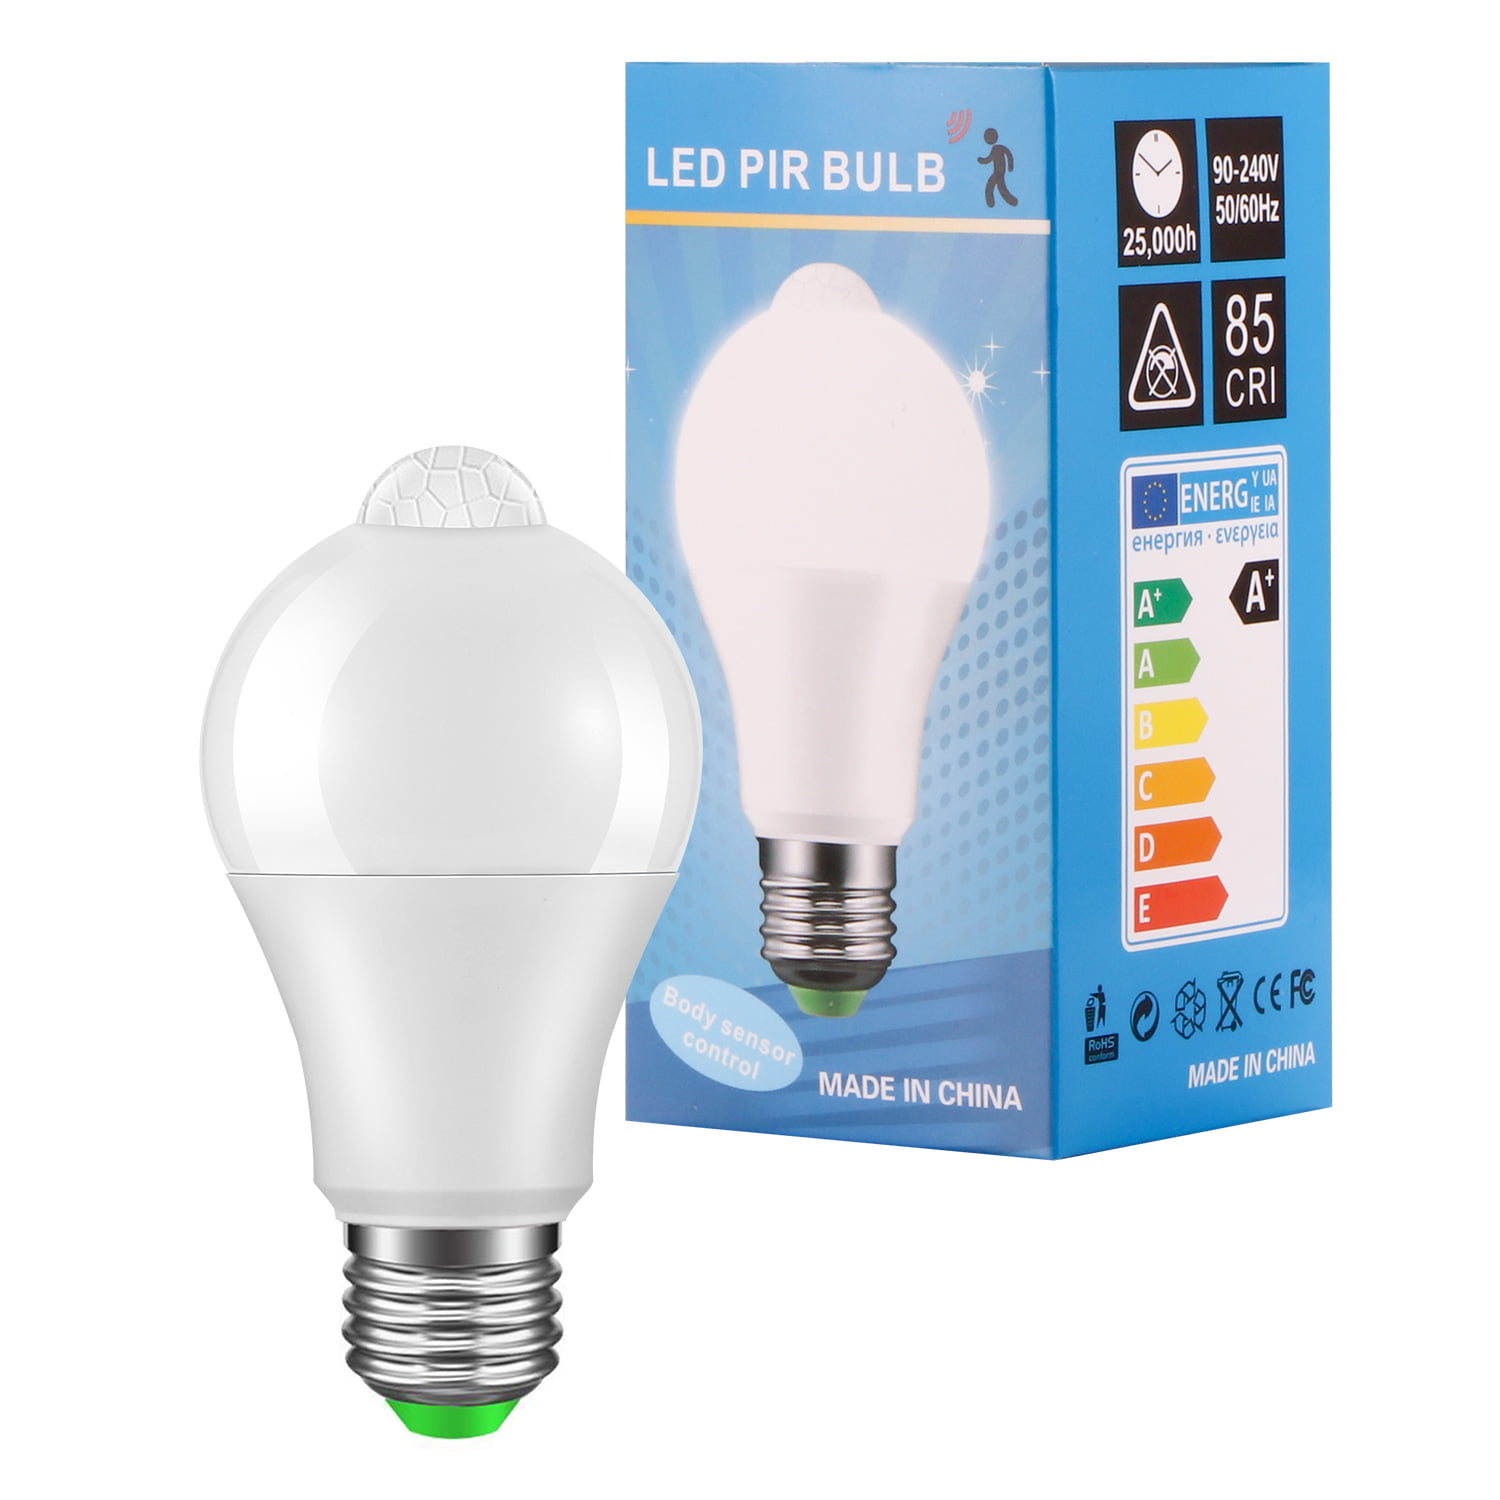 LED PIR Sensor Lamp 12w AC 85-265V Led Bulb Auto Smart Led PIR Infrared Body Sound Light E27 Sensor Light - Walmart.com